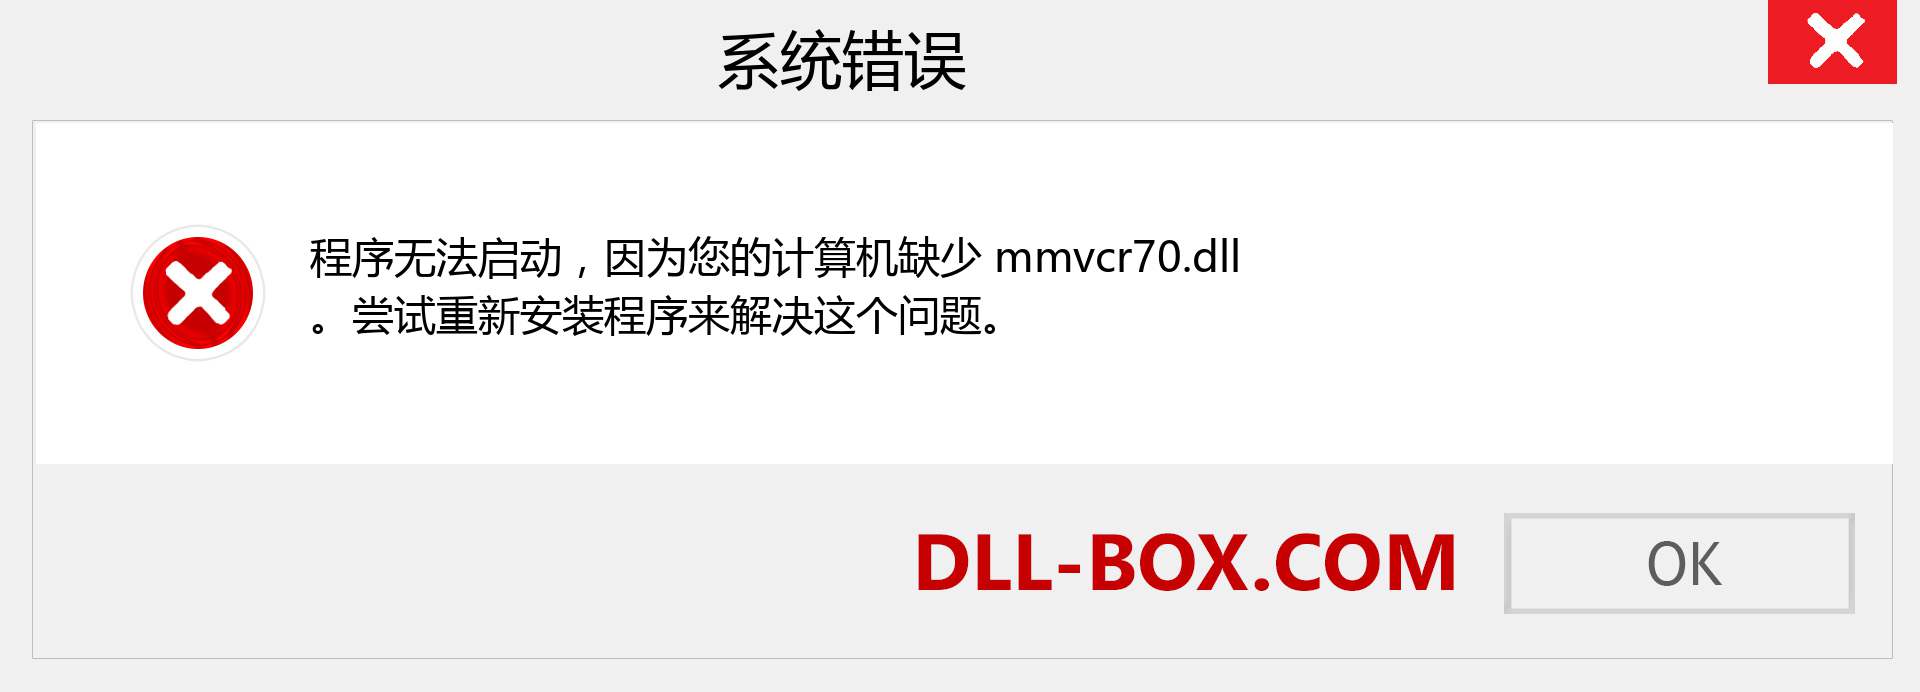 mmvcr70.dll 文件丢失？。 适用于 Windows 7、8、10 的下载 - 修复 Windows、照片、图像上的 mmvcr70 dll 丢失错误